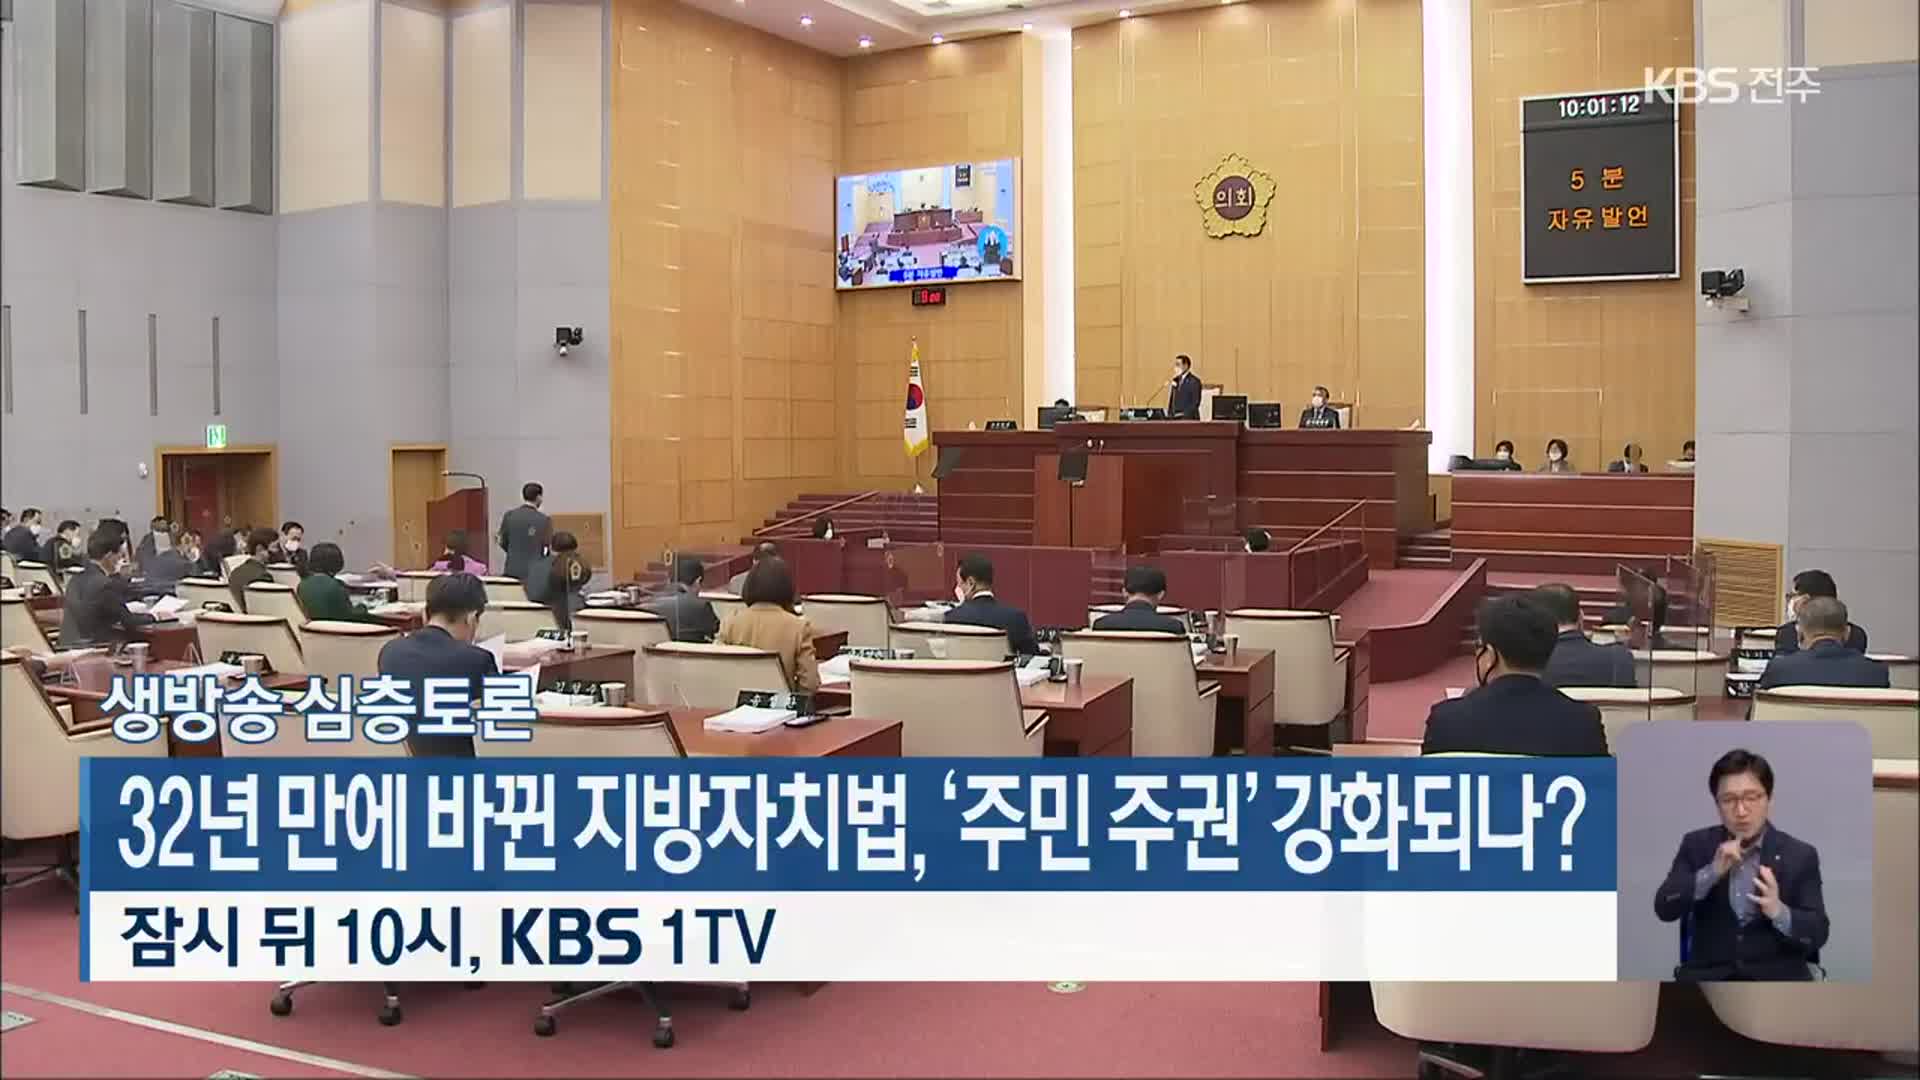 [생방송 심층토론] 32년 만에 바뀐 지방자치법, ‘주민 주권’ 강화되나? 잠시 뒤 10시, KBS 1TV